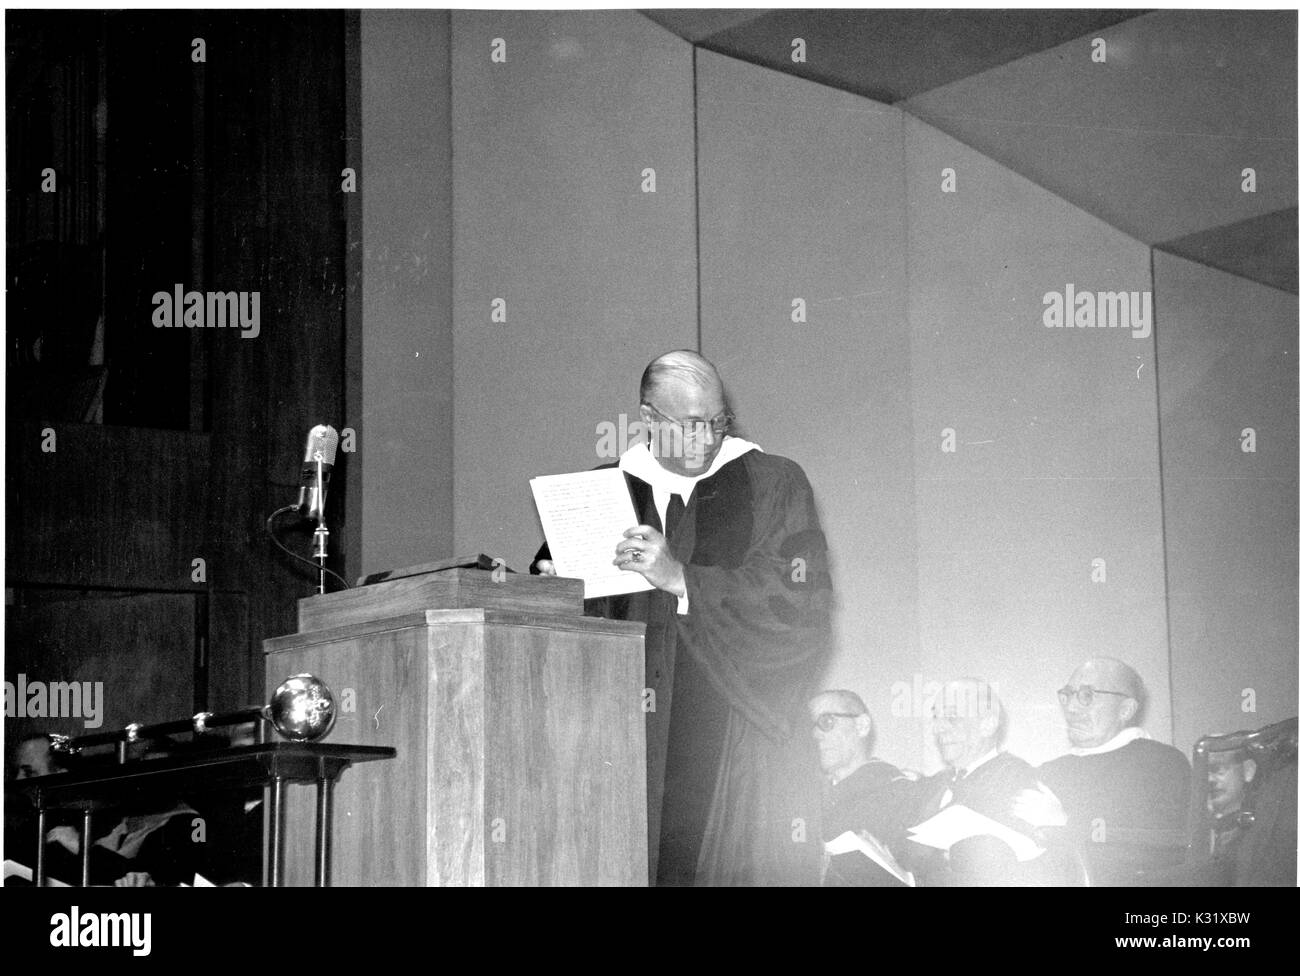 Le président de l'Université Johns Hopkins, Milton S. Eisenhower parle sur un podium au cours de la journée de commémoration de l'université, la célébration de la fondation de l'université, à Baltimore, Maryland, le 22 février 1963. Banque D'Images